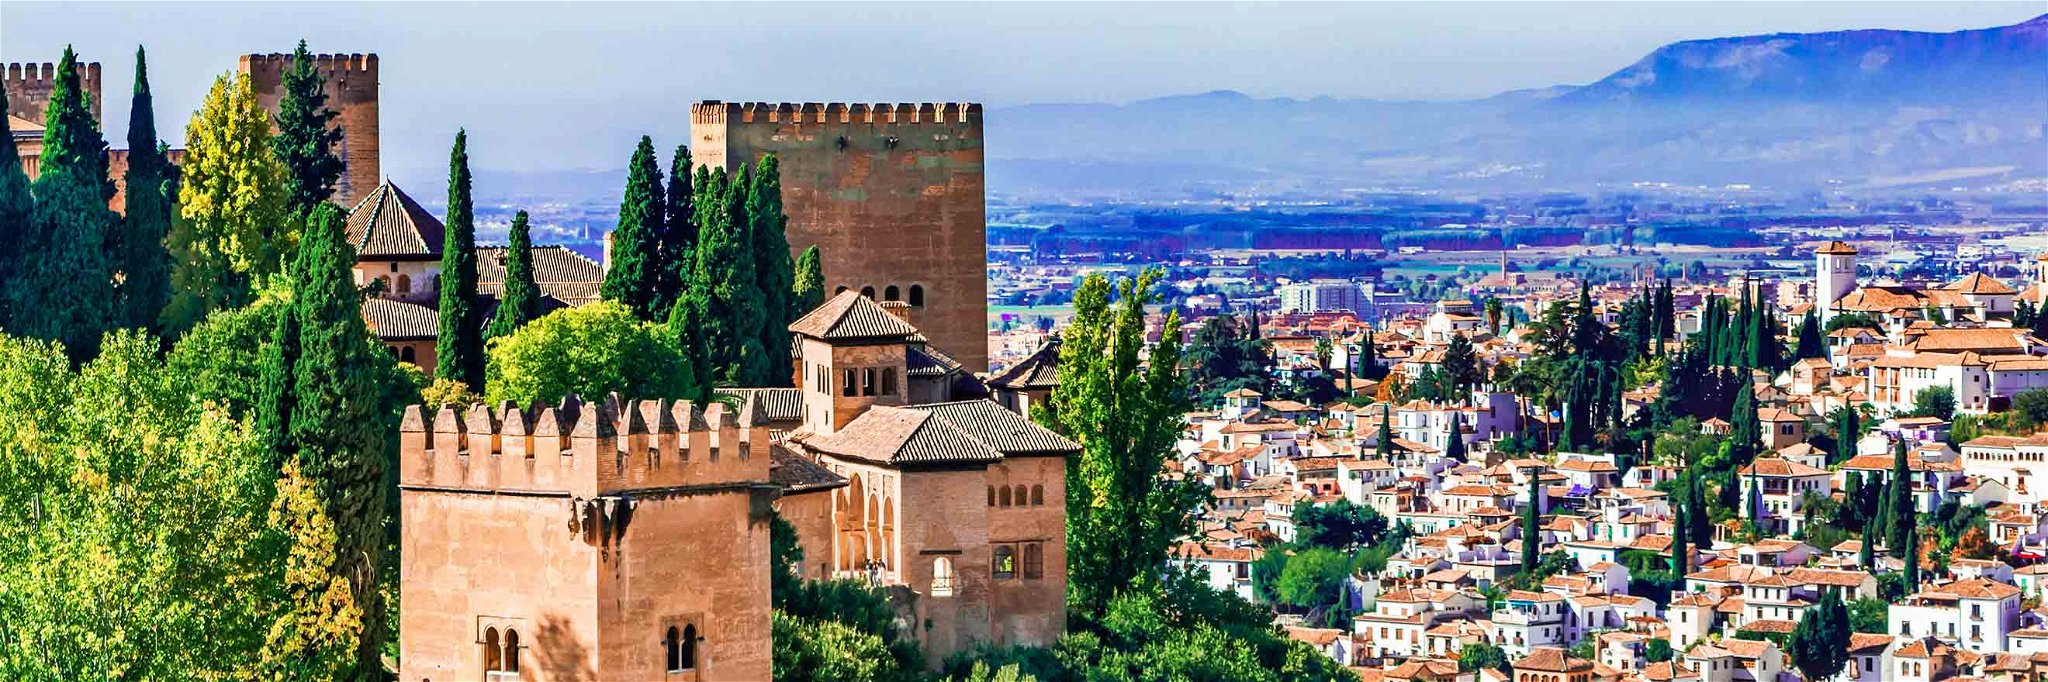 Andalusien gehört zu den beliebtesten Urlaubsregionen in Europa.